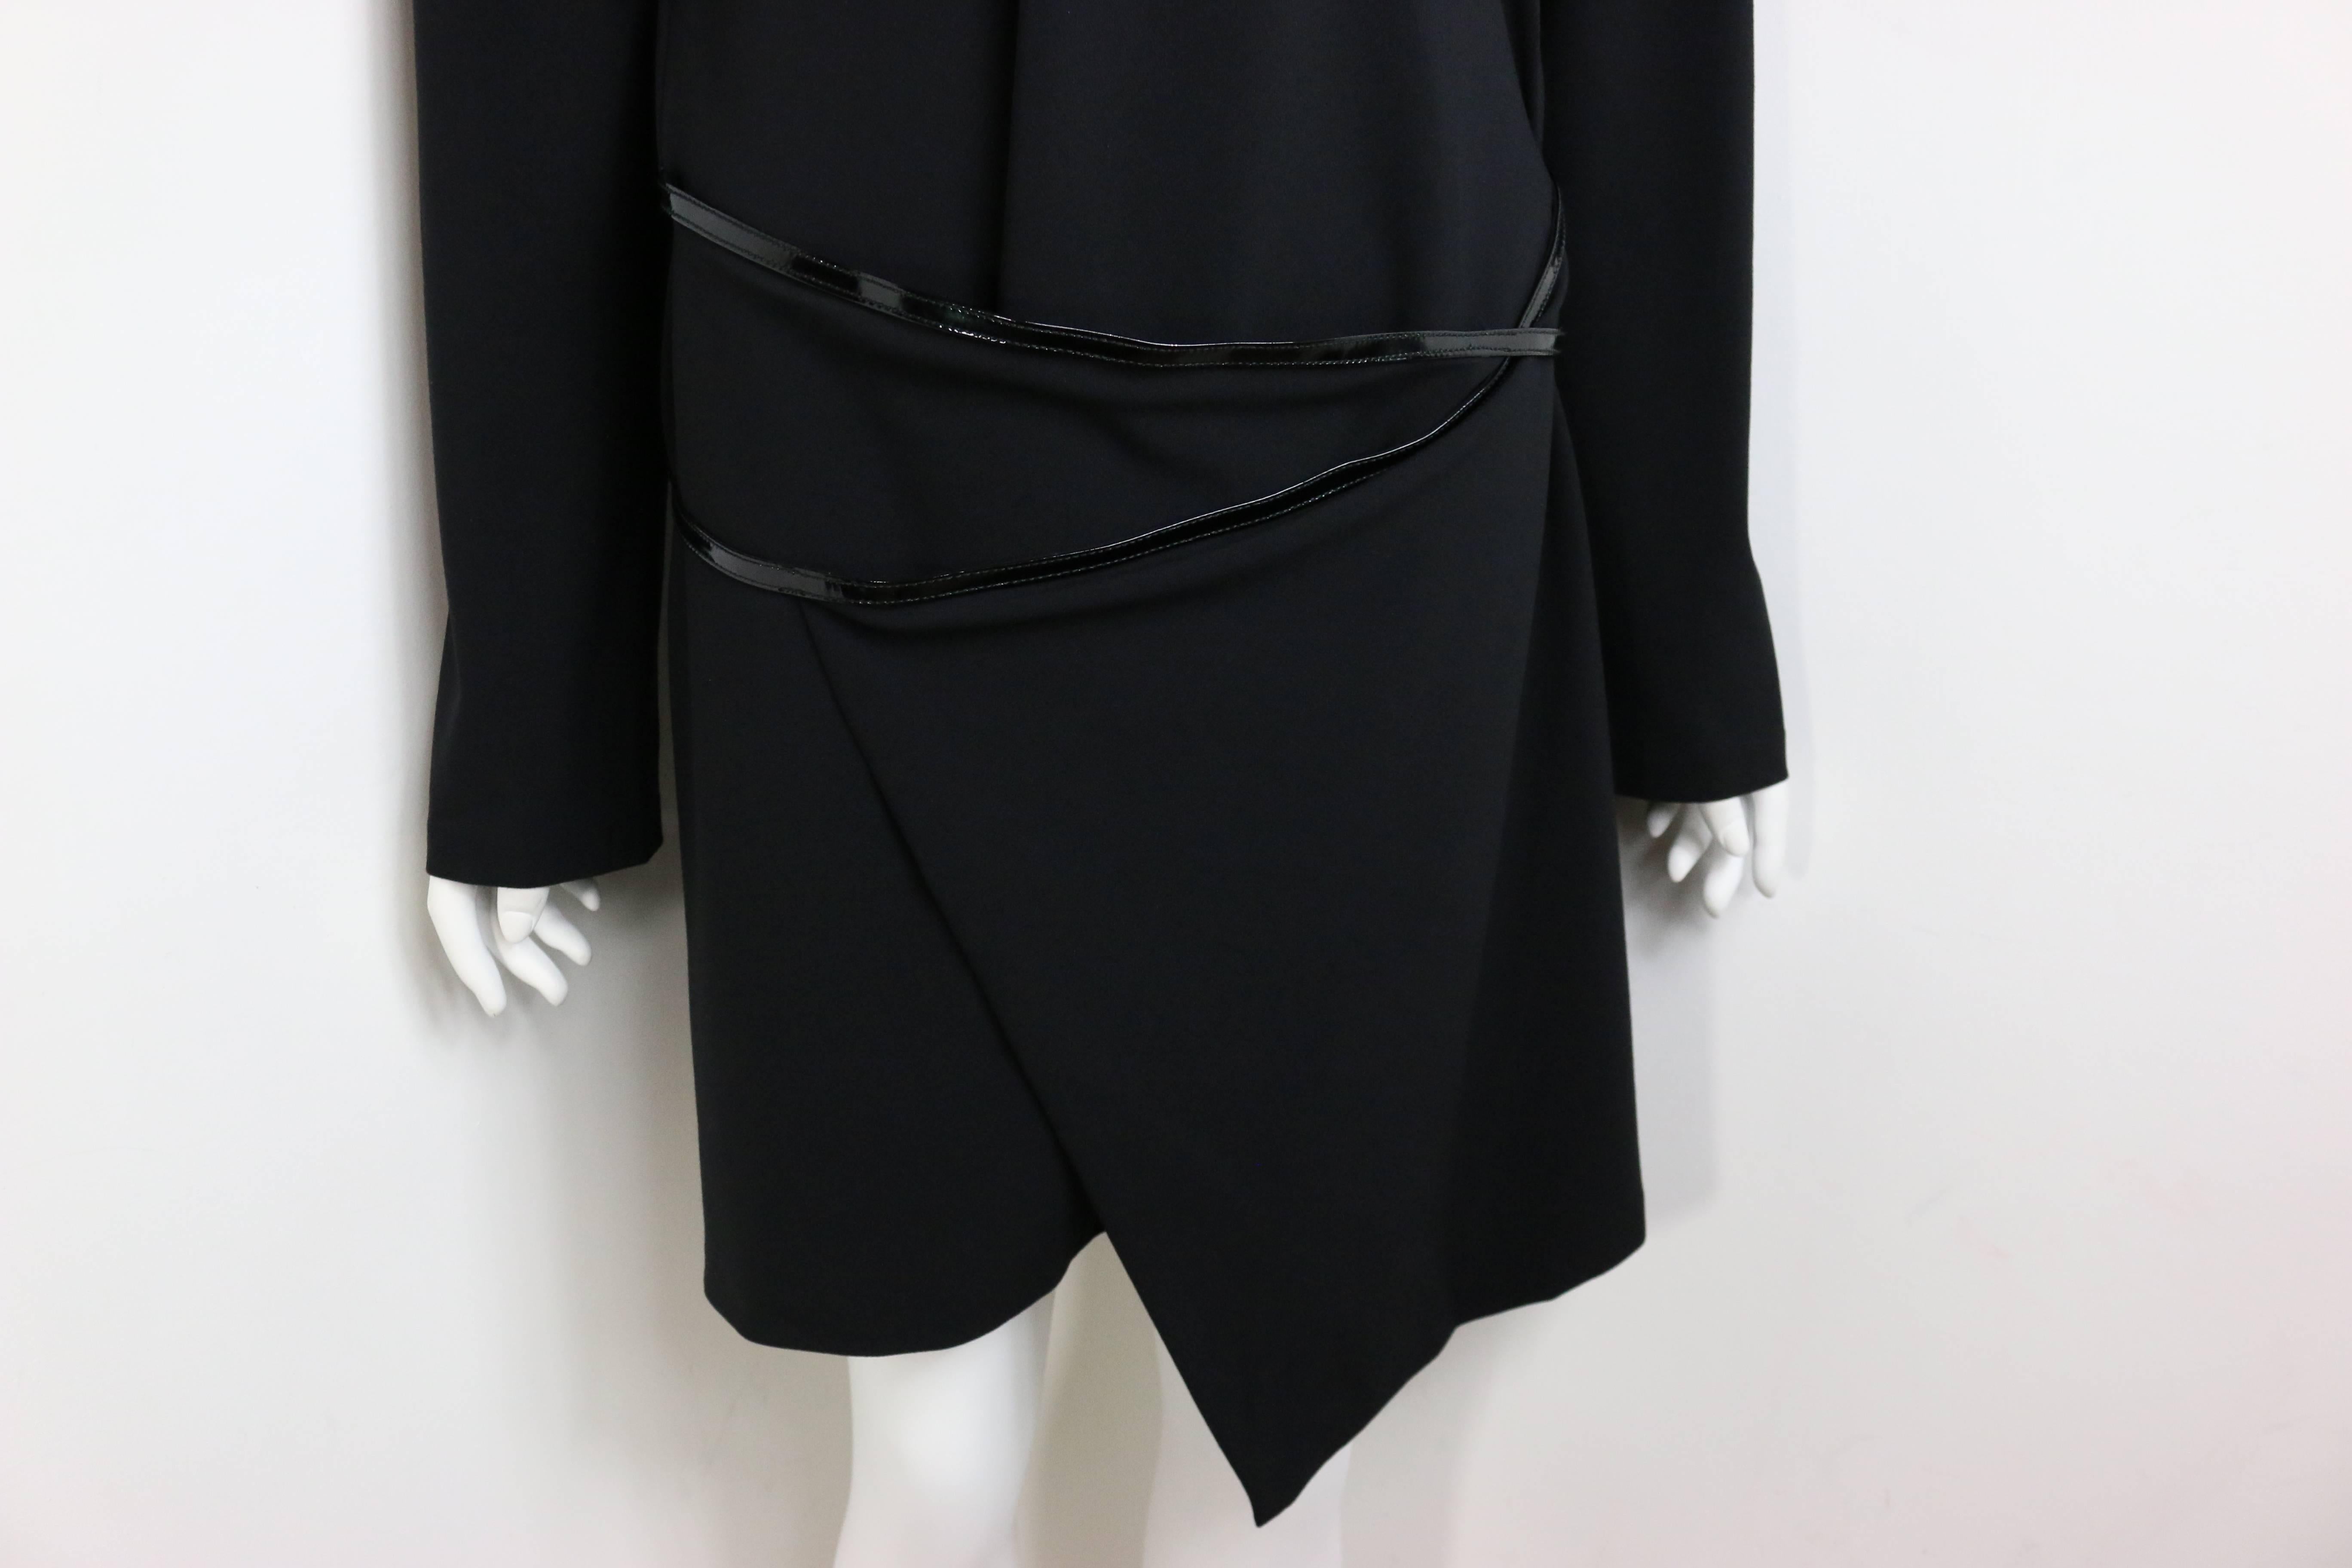 - Mini robe noire iconique des années 90 de la collection automne 1997 de Gucci by Tom Ford. 

- La robe est dotée d'une épaule structurée maintenue par des épaulettes, d'une ceinture en cuir verni à boucle métallique argentée Gucci 